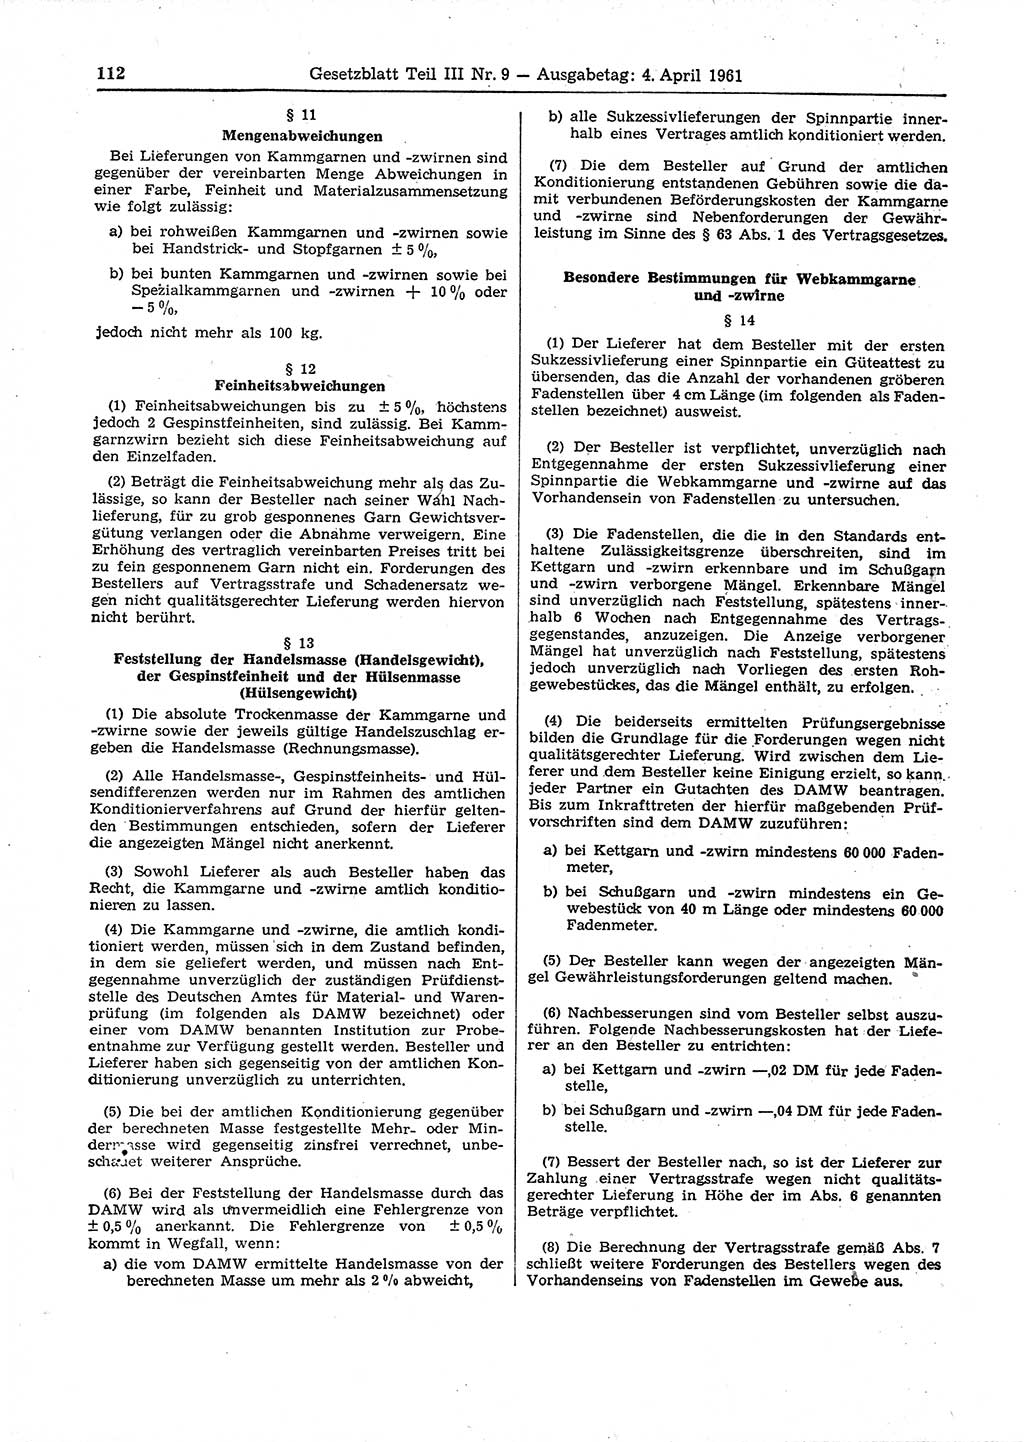 Gesetzblatt (GBl.) der Deutschen Demokratischen Republik (DDR) Teil ⅠⅠⅠ 1961, Seite 112 (GBl. DDR ⅠⅠⅠ 1961, S. 112)